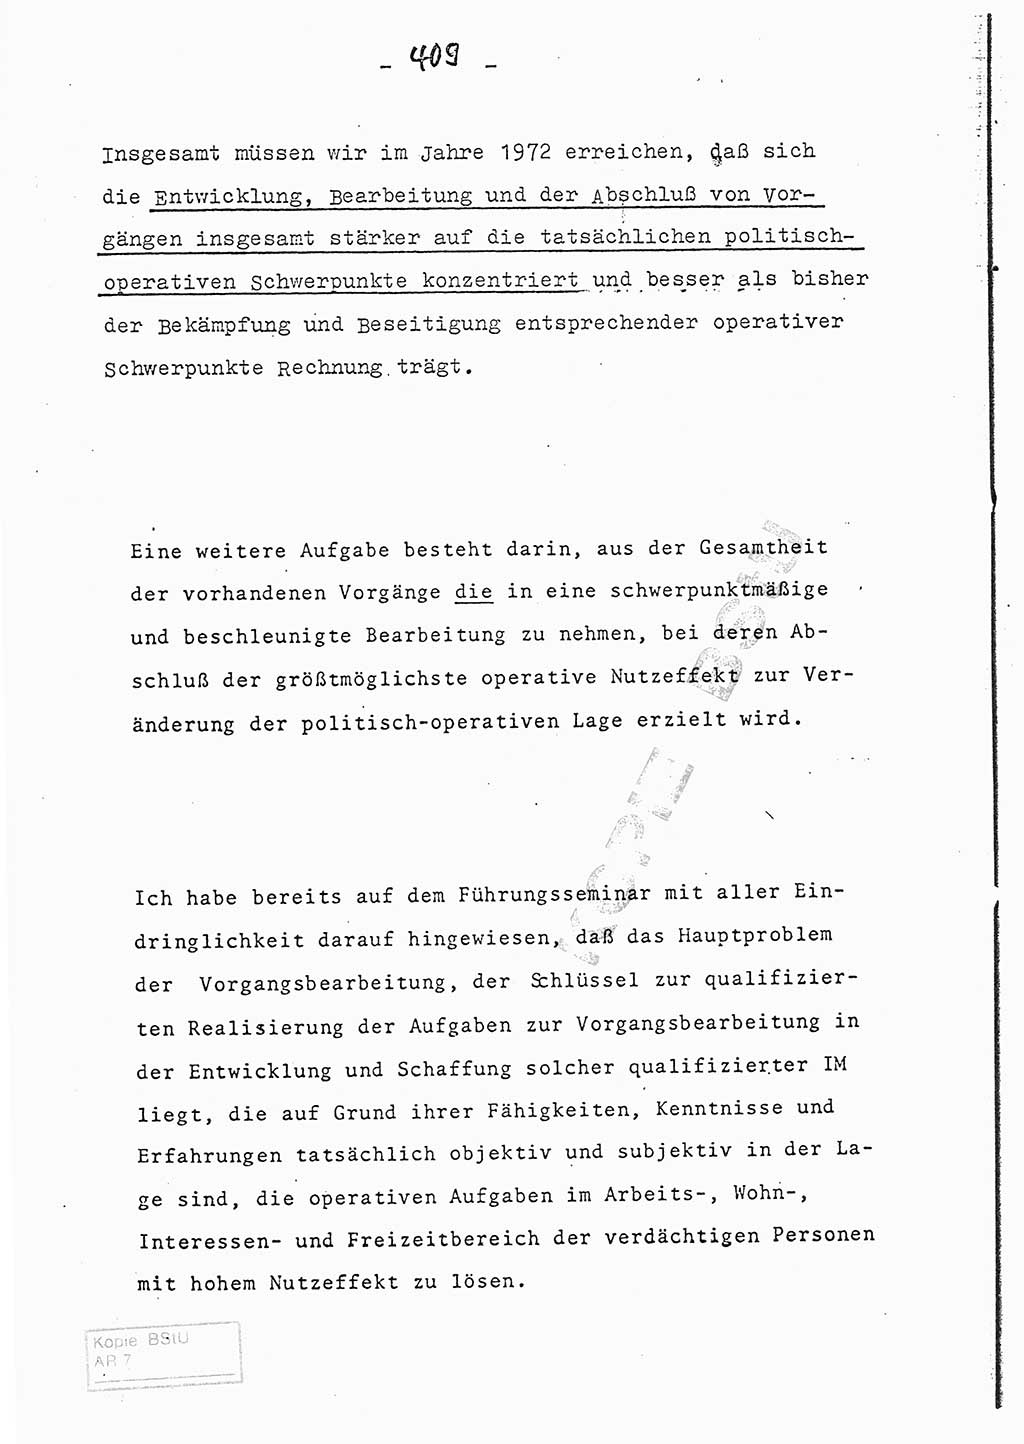 Referat (Entwurf) des Genossen Minister (Generaloberst Erich Mielke) auf der Dienstkonferenz 1972, Ministerium für Staatssicherheit (MfS) [Deutsche Demokratische Republik (DDR)], Der Minister, Geheime Verschlußsache (GVS) 008-150/72, Berlin 25.2.1972, Seite 409 (Ref. Entw. DK MfS DDR Min. GVS 008-150/72 1972, S. 409)